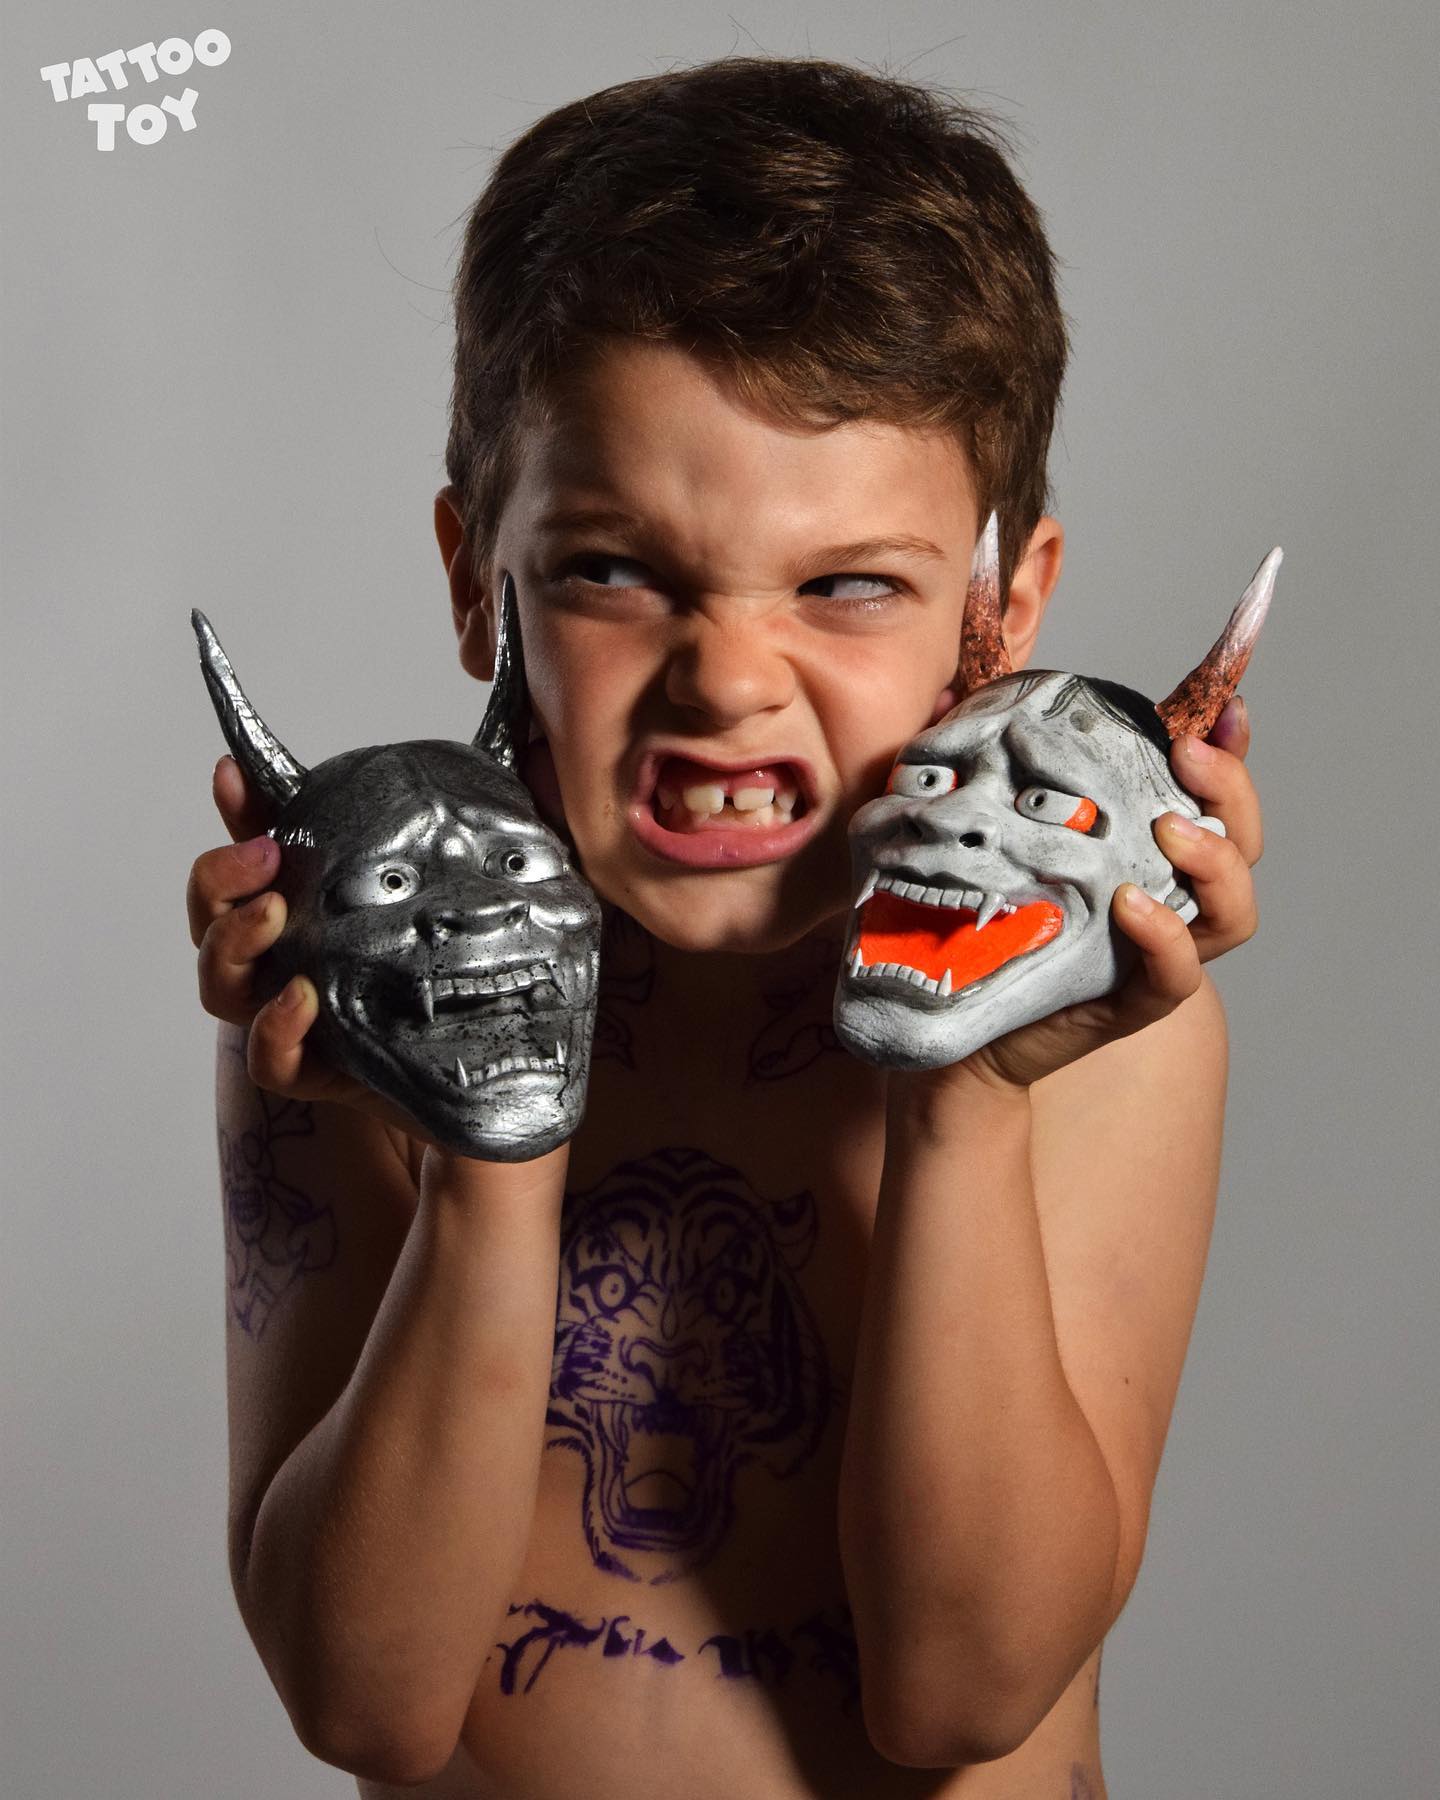 Kids Tattoo Machine - Shop Online - Etsy